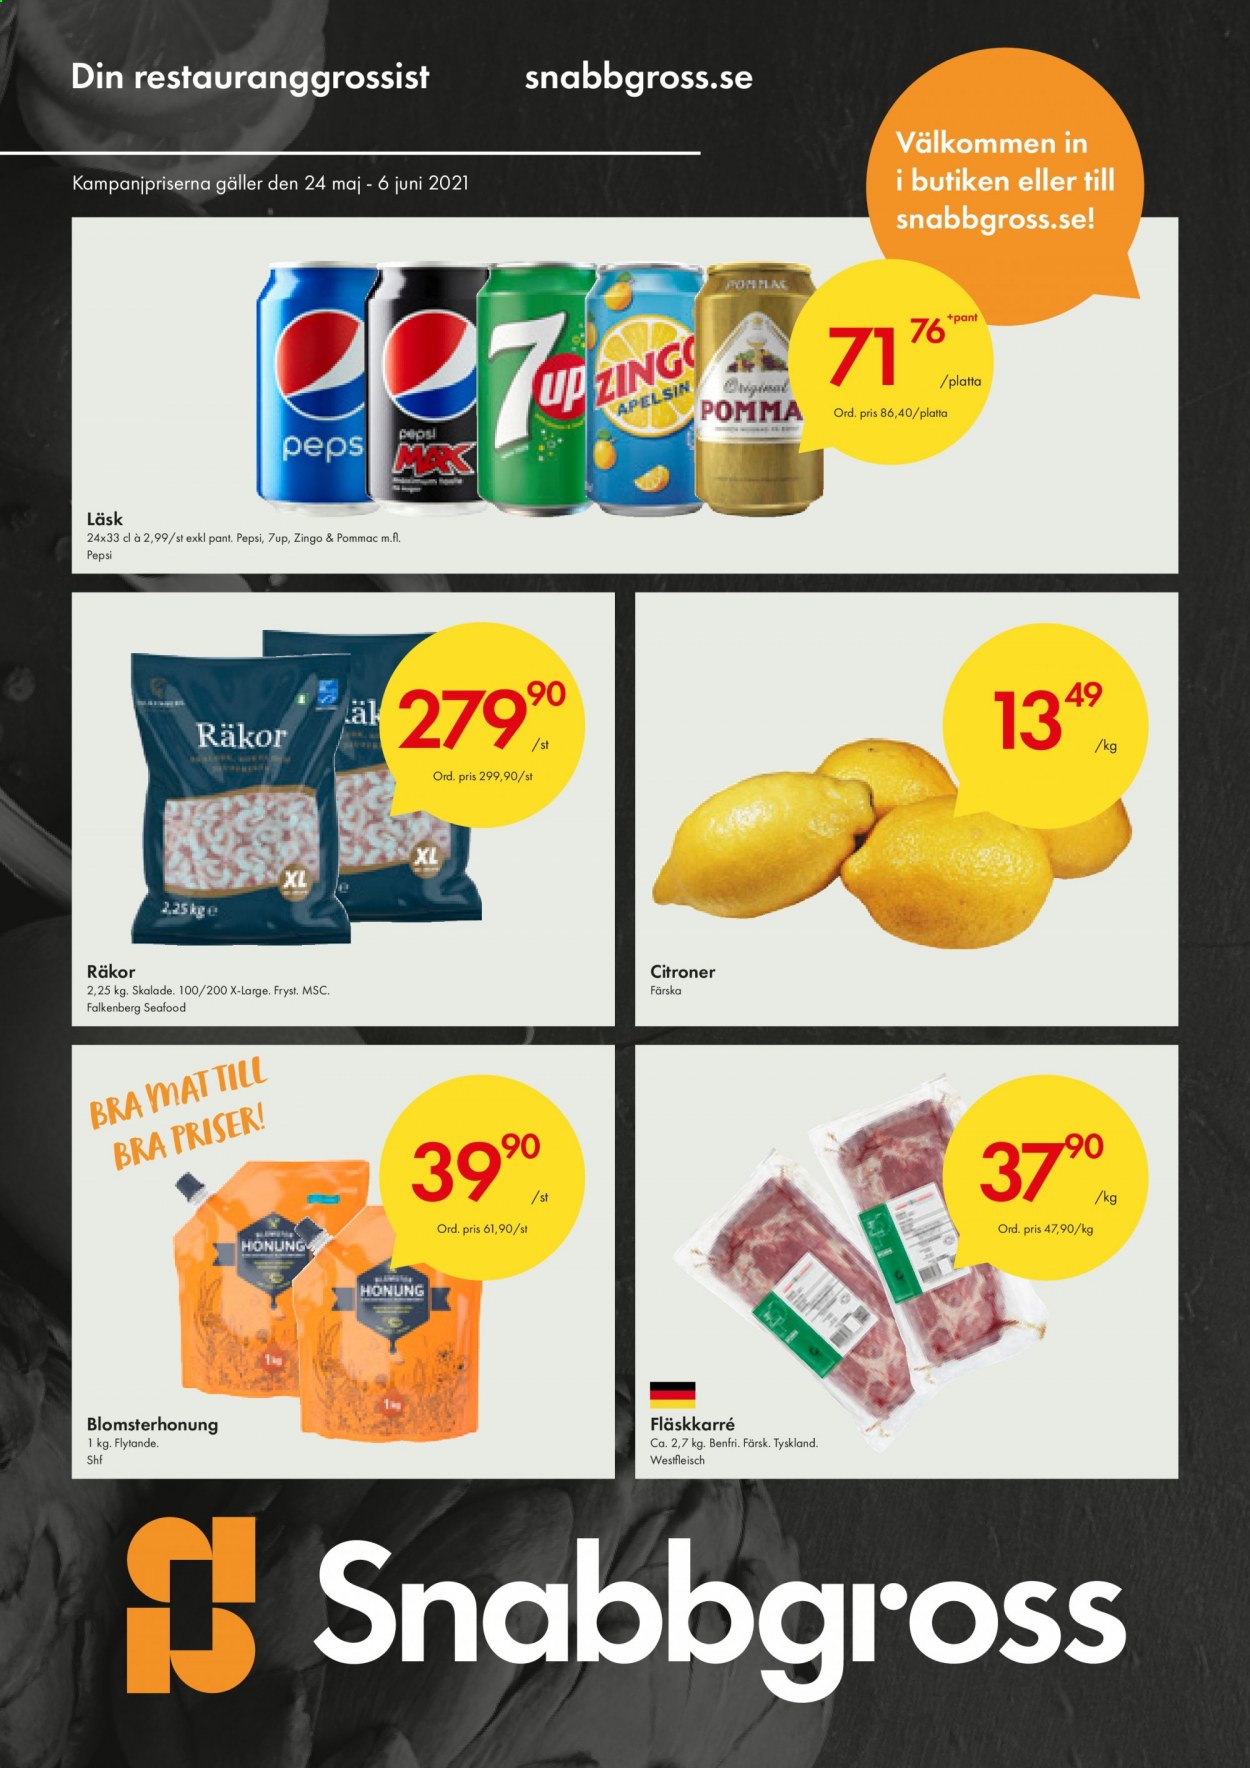 thumbnail - Axfood Snabbgross reklamblad - 24/5 2021 - 6/6 2021 - varor från reklamblad - fläskkarré, citroner, räkor, Pepsi, 7UP. Sida 1.